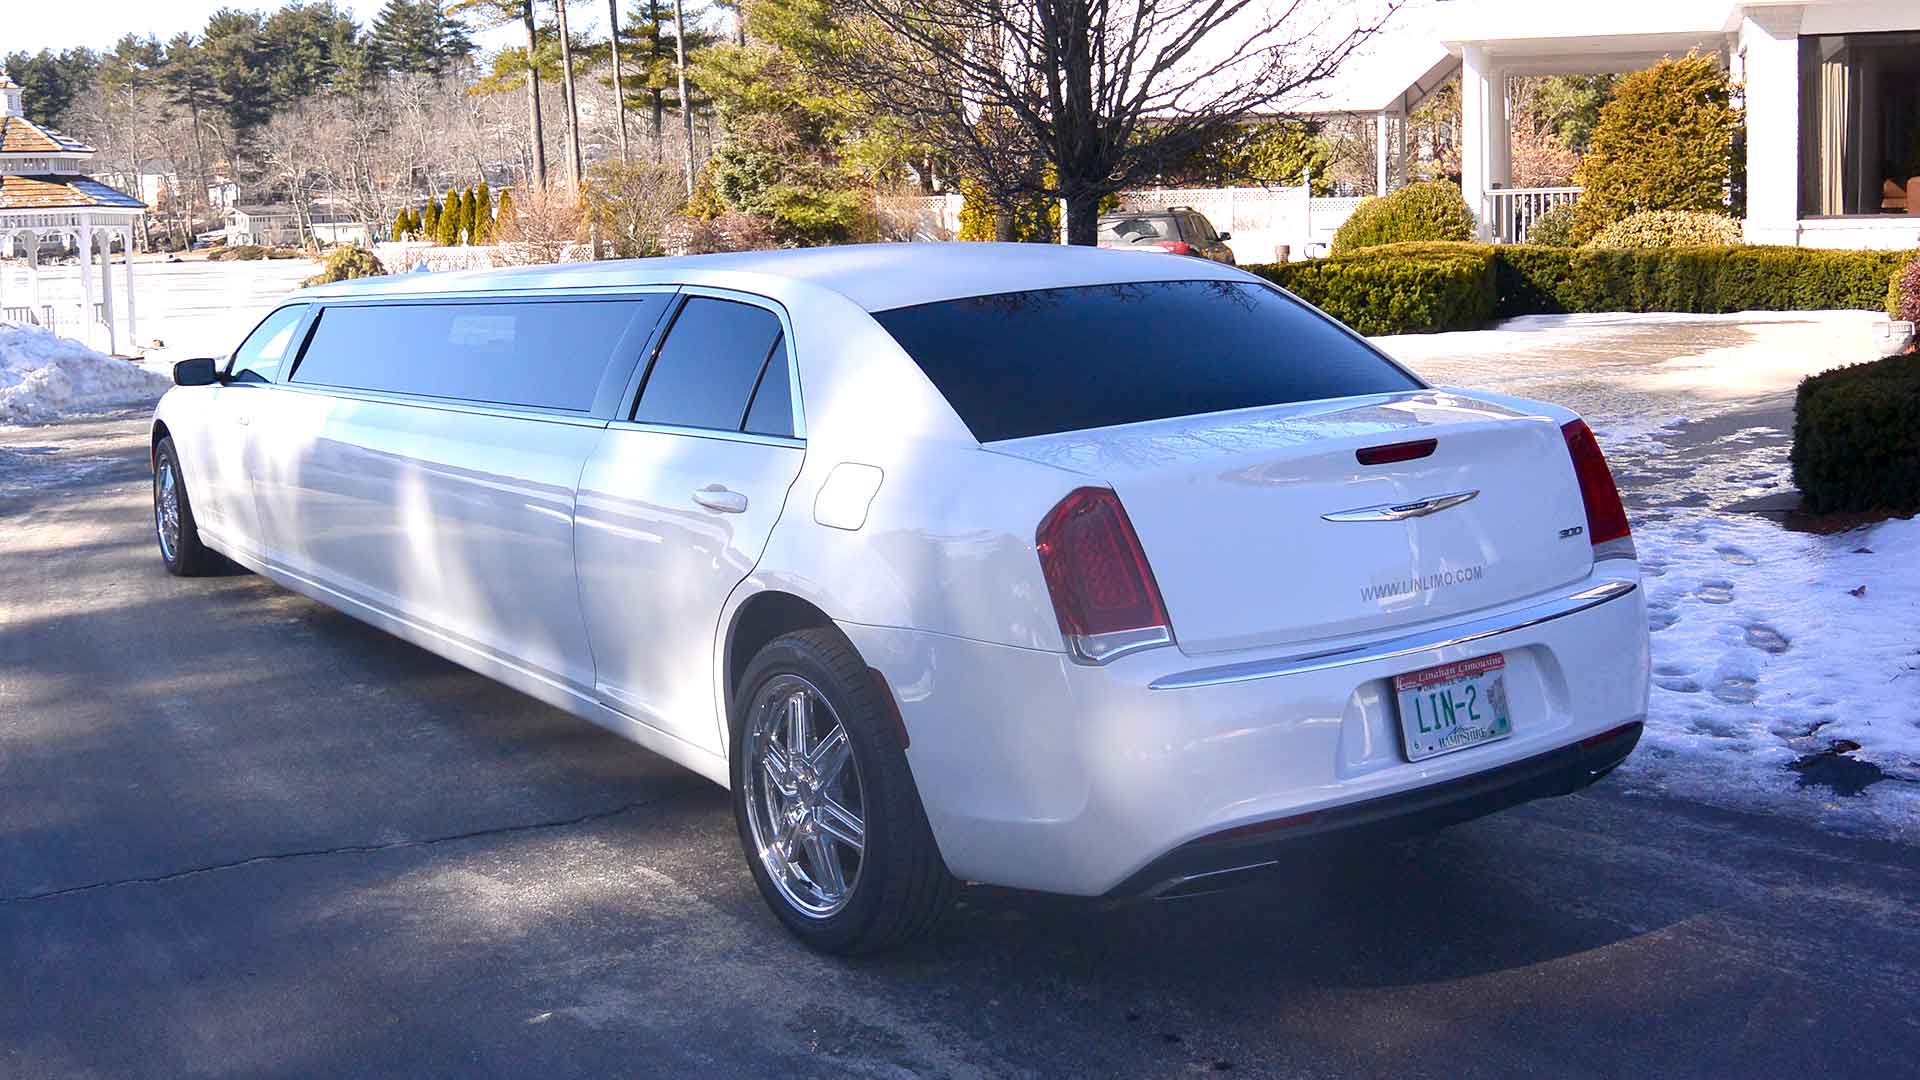 Chrysler limo profile